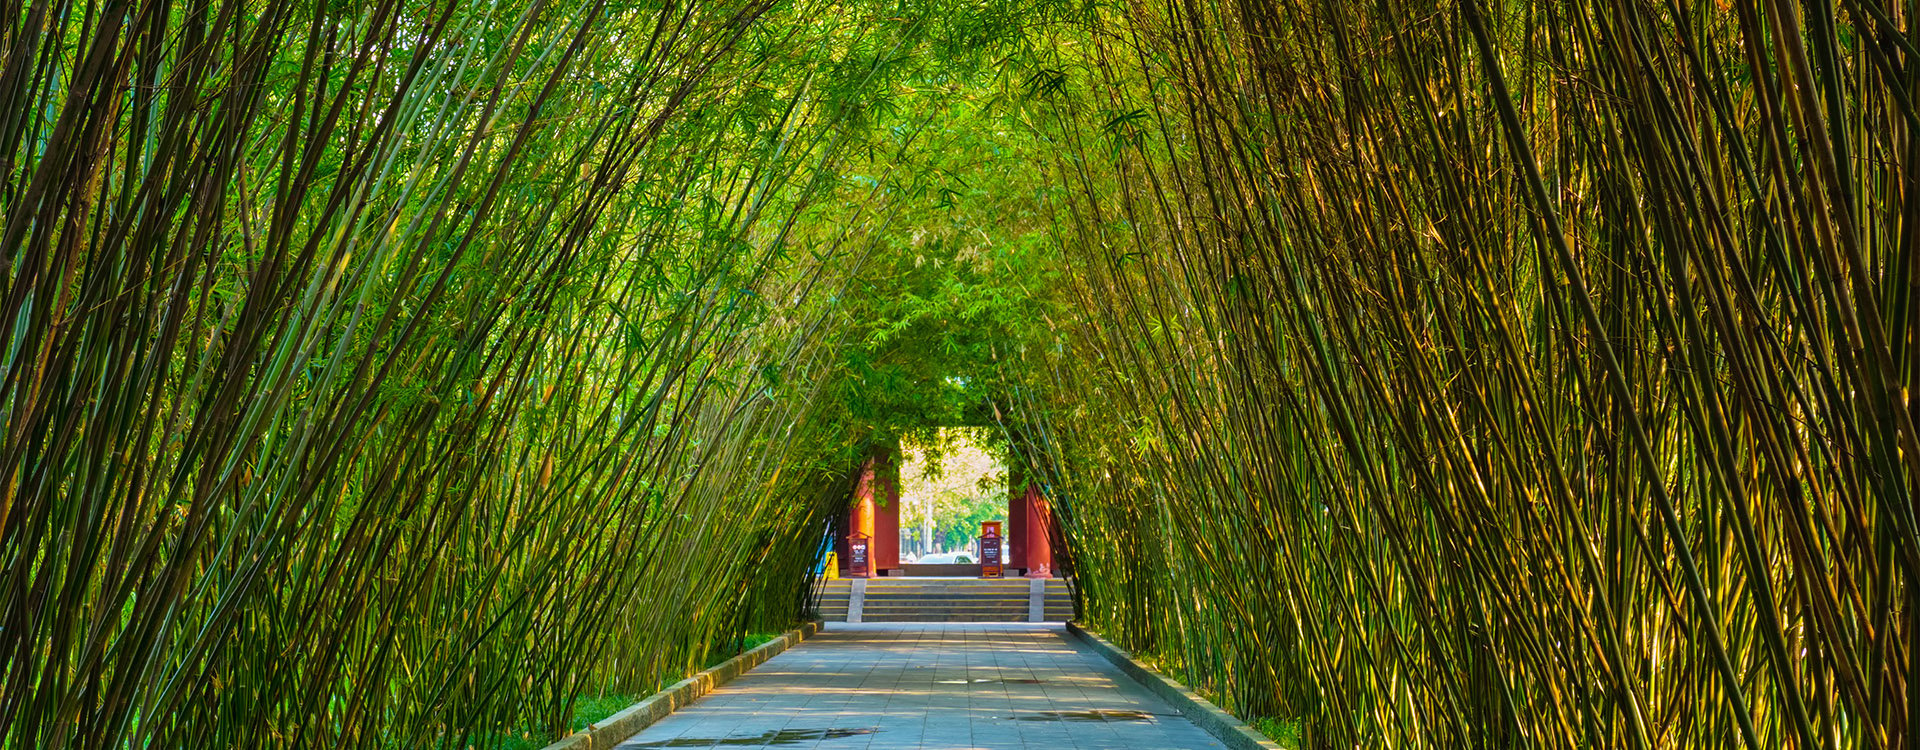 China, Chengdu, bamboo forest, wangjiang Pavilion, wangjiang park, Sichuan Province